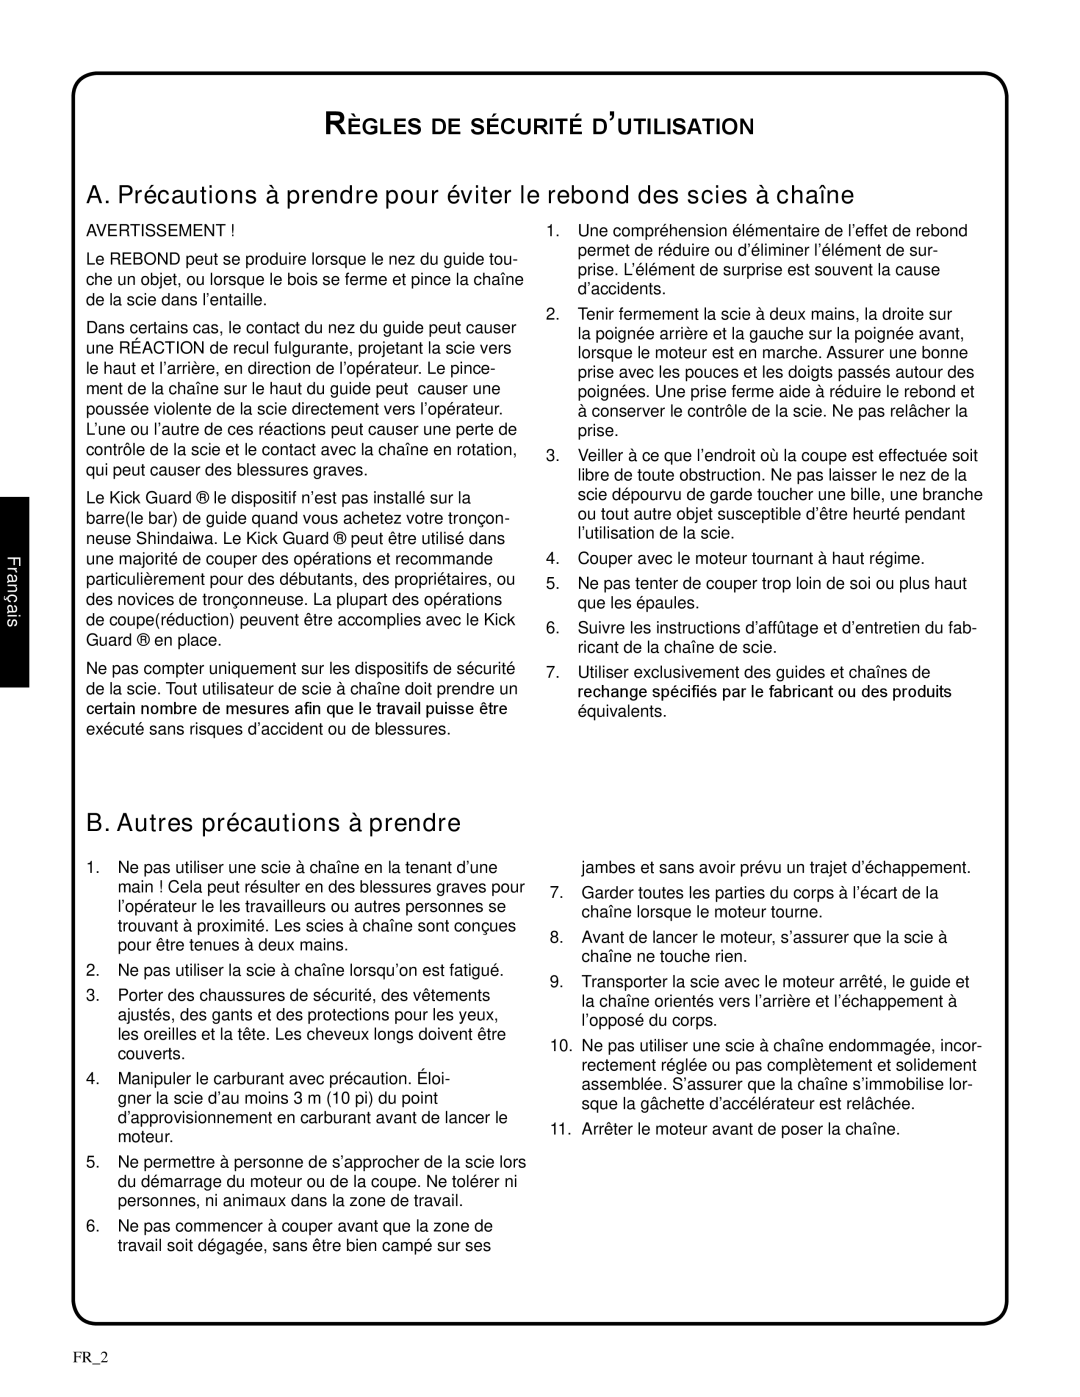 Shindaiwa 82085, 326T manual B. Autres précautions à prendre, Règles de sécurité d’utilisation, Français 